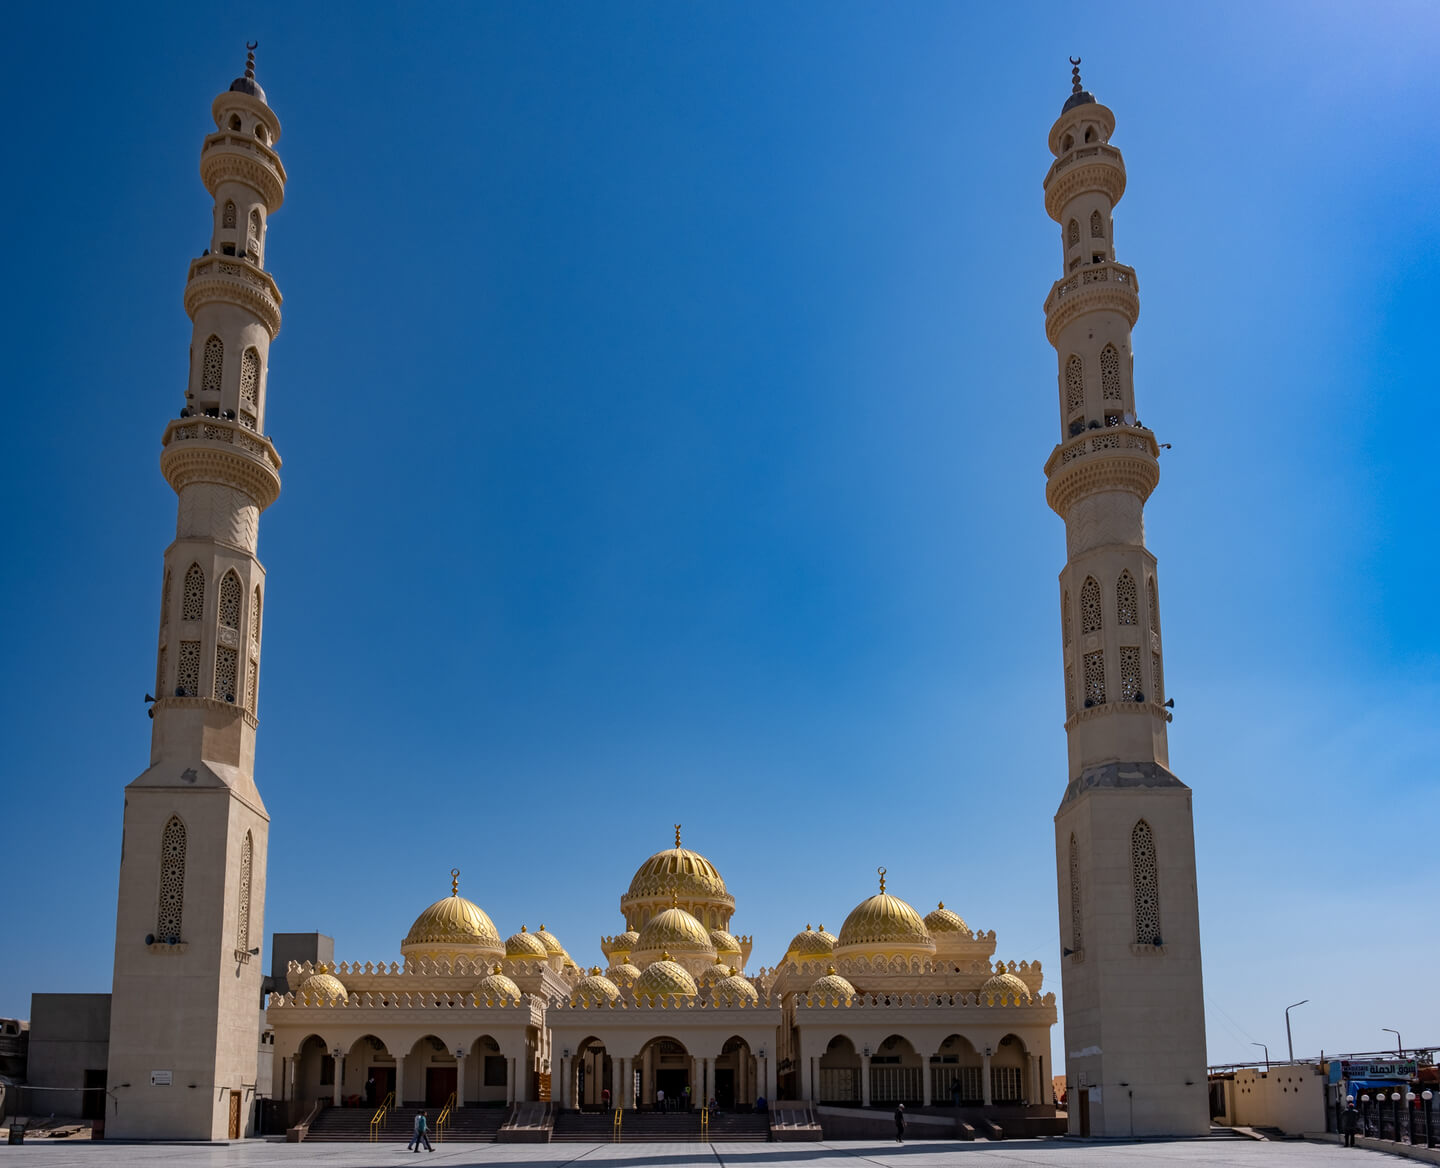 El Mina Moschee in Hurghada